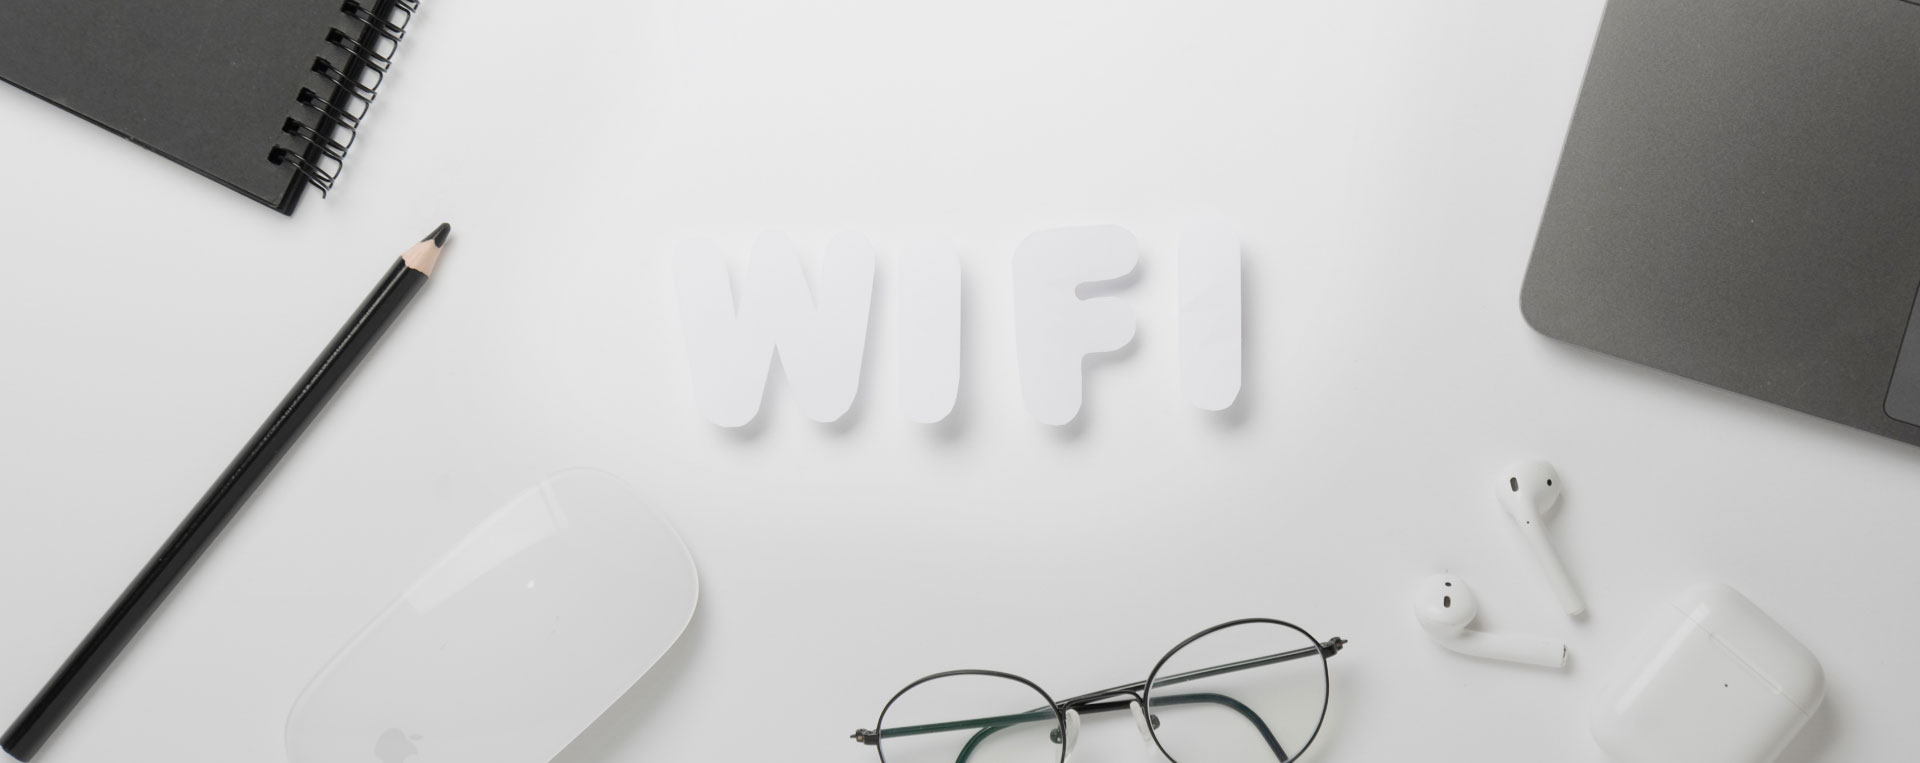 WiFi Kamu Sering dibobol? Inilah Cara Memblokir Perangkat yang Terhubung ke WiFi Kamu